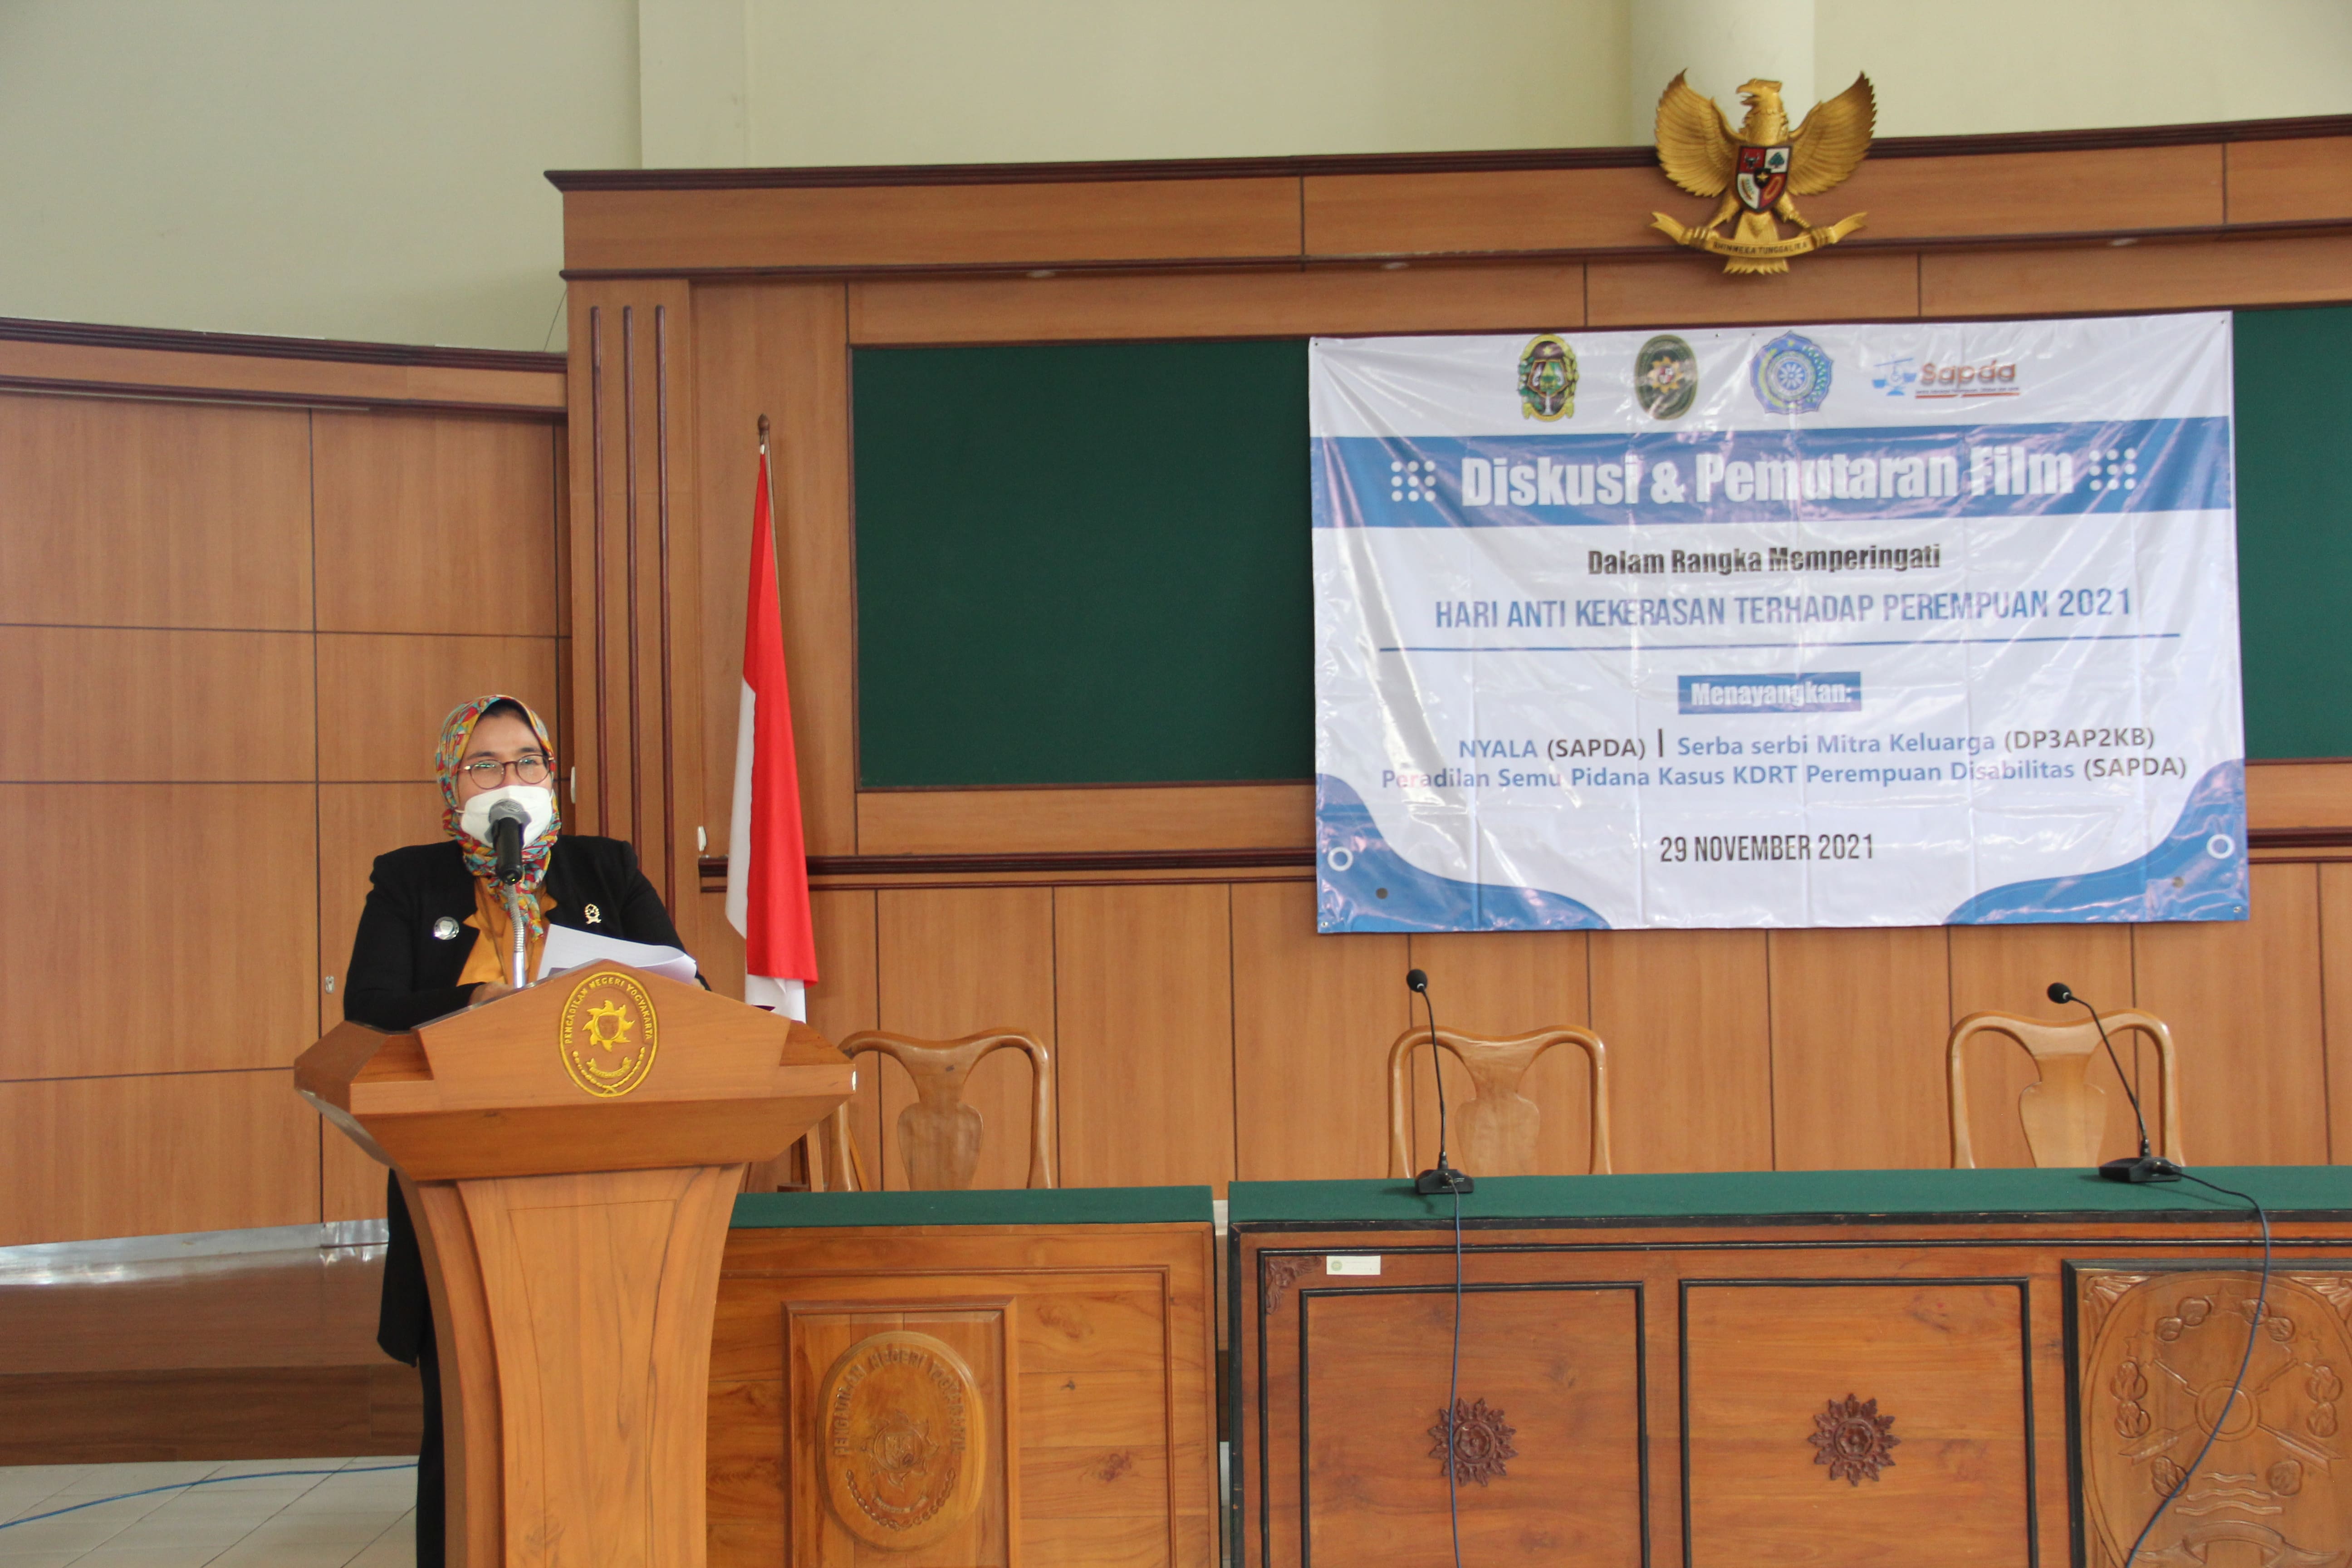 Diskusi dan Pemutaran Film Bersama SAPDA dan Dinas P3AP2KB Kota Yogyakarta